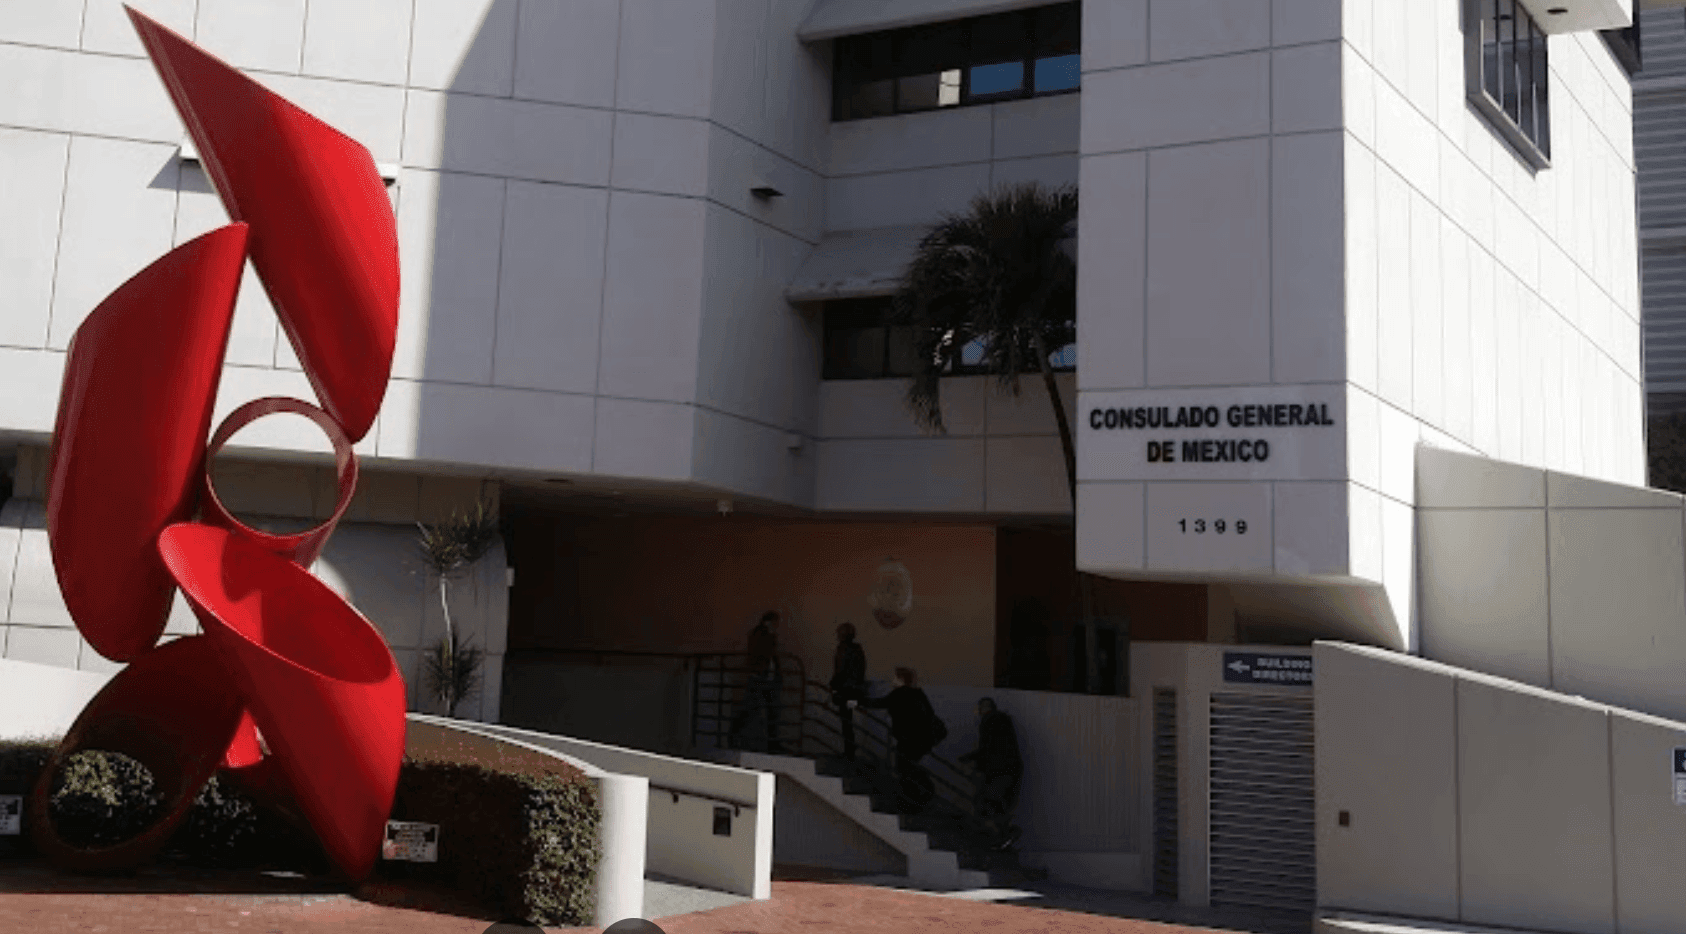 Consulado General de México de Miami